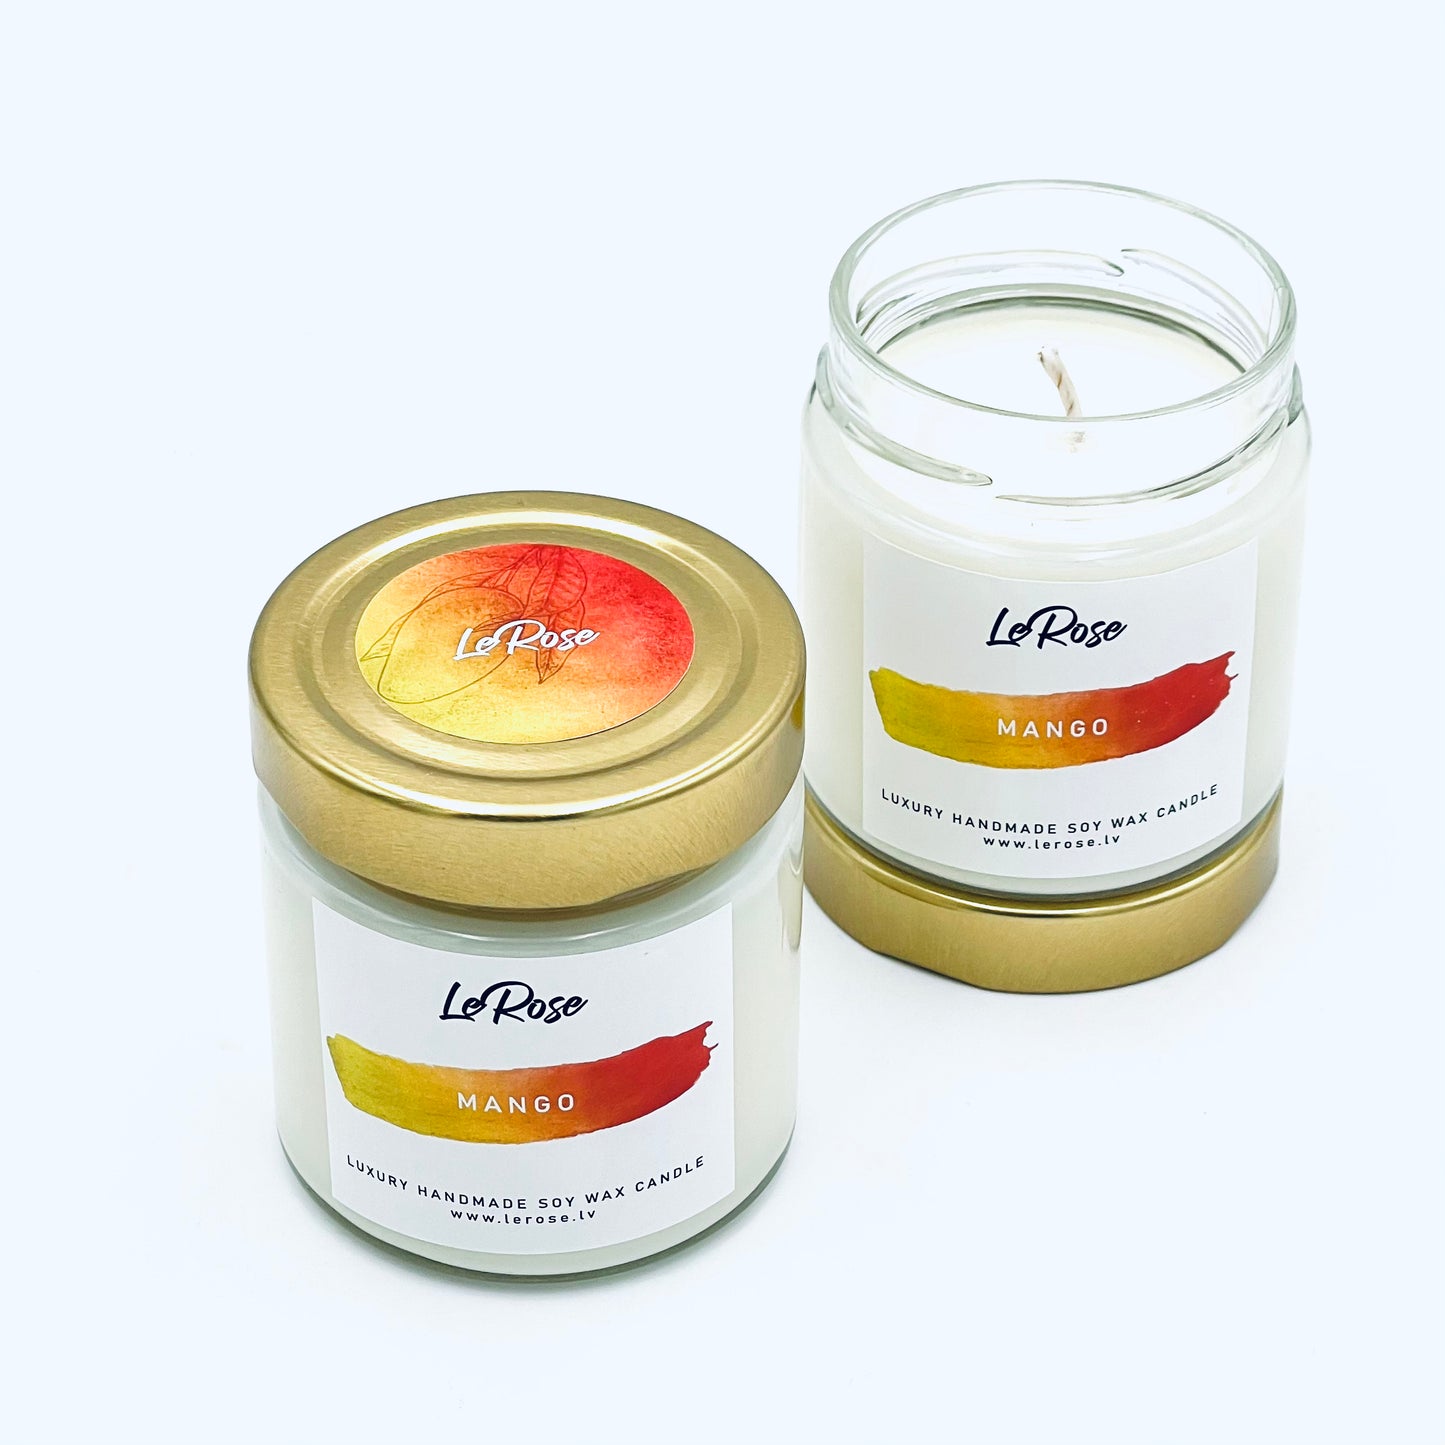 Soy wax candle "LeRose" Mango, 50 h